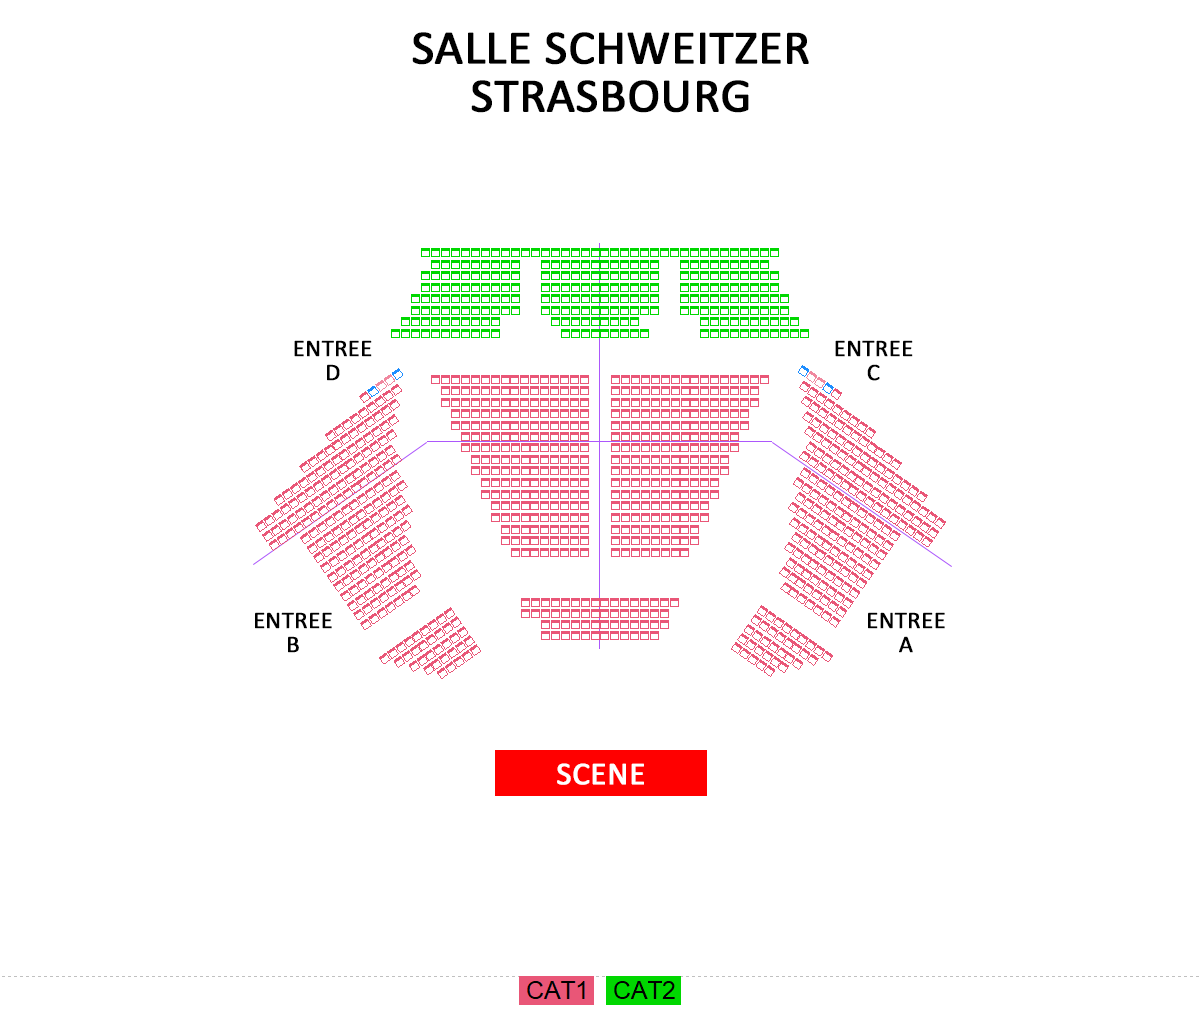 Pmc - Salle Schweitzer